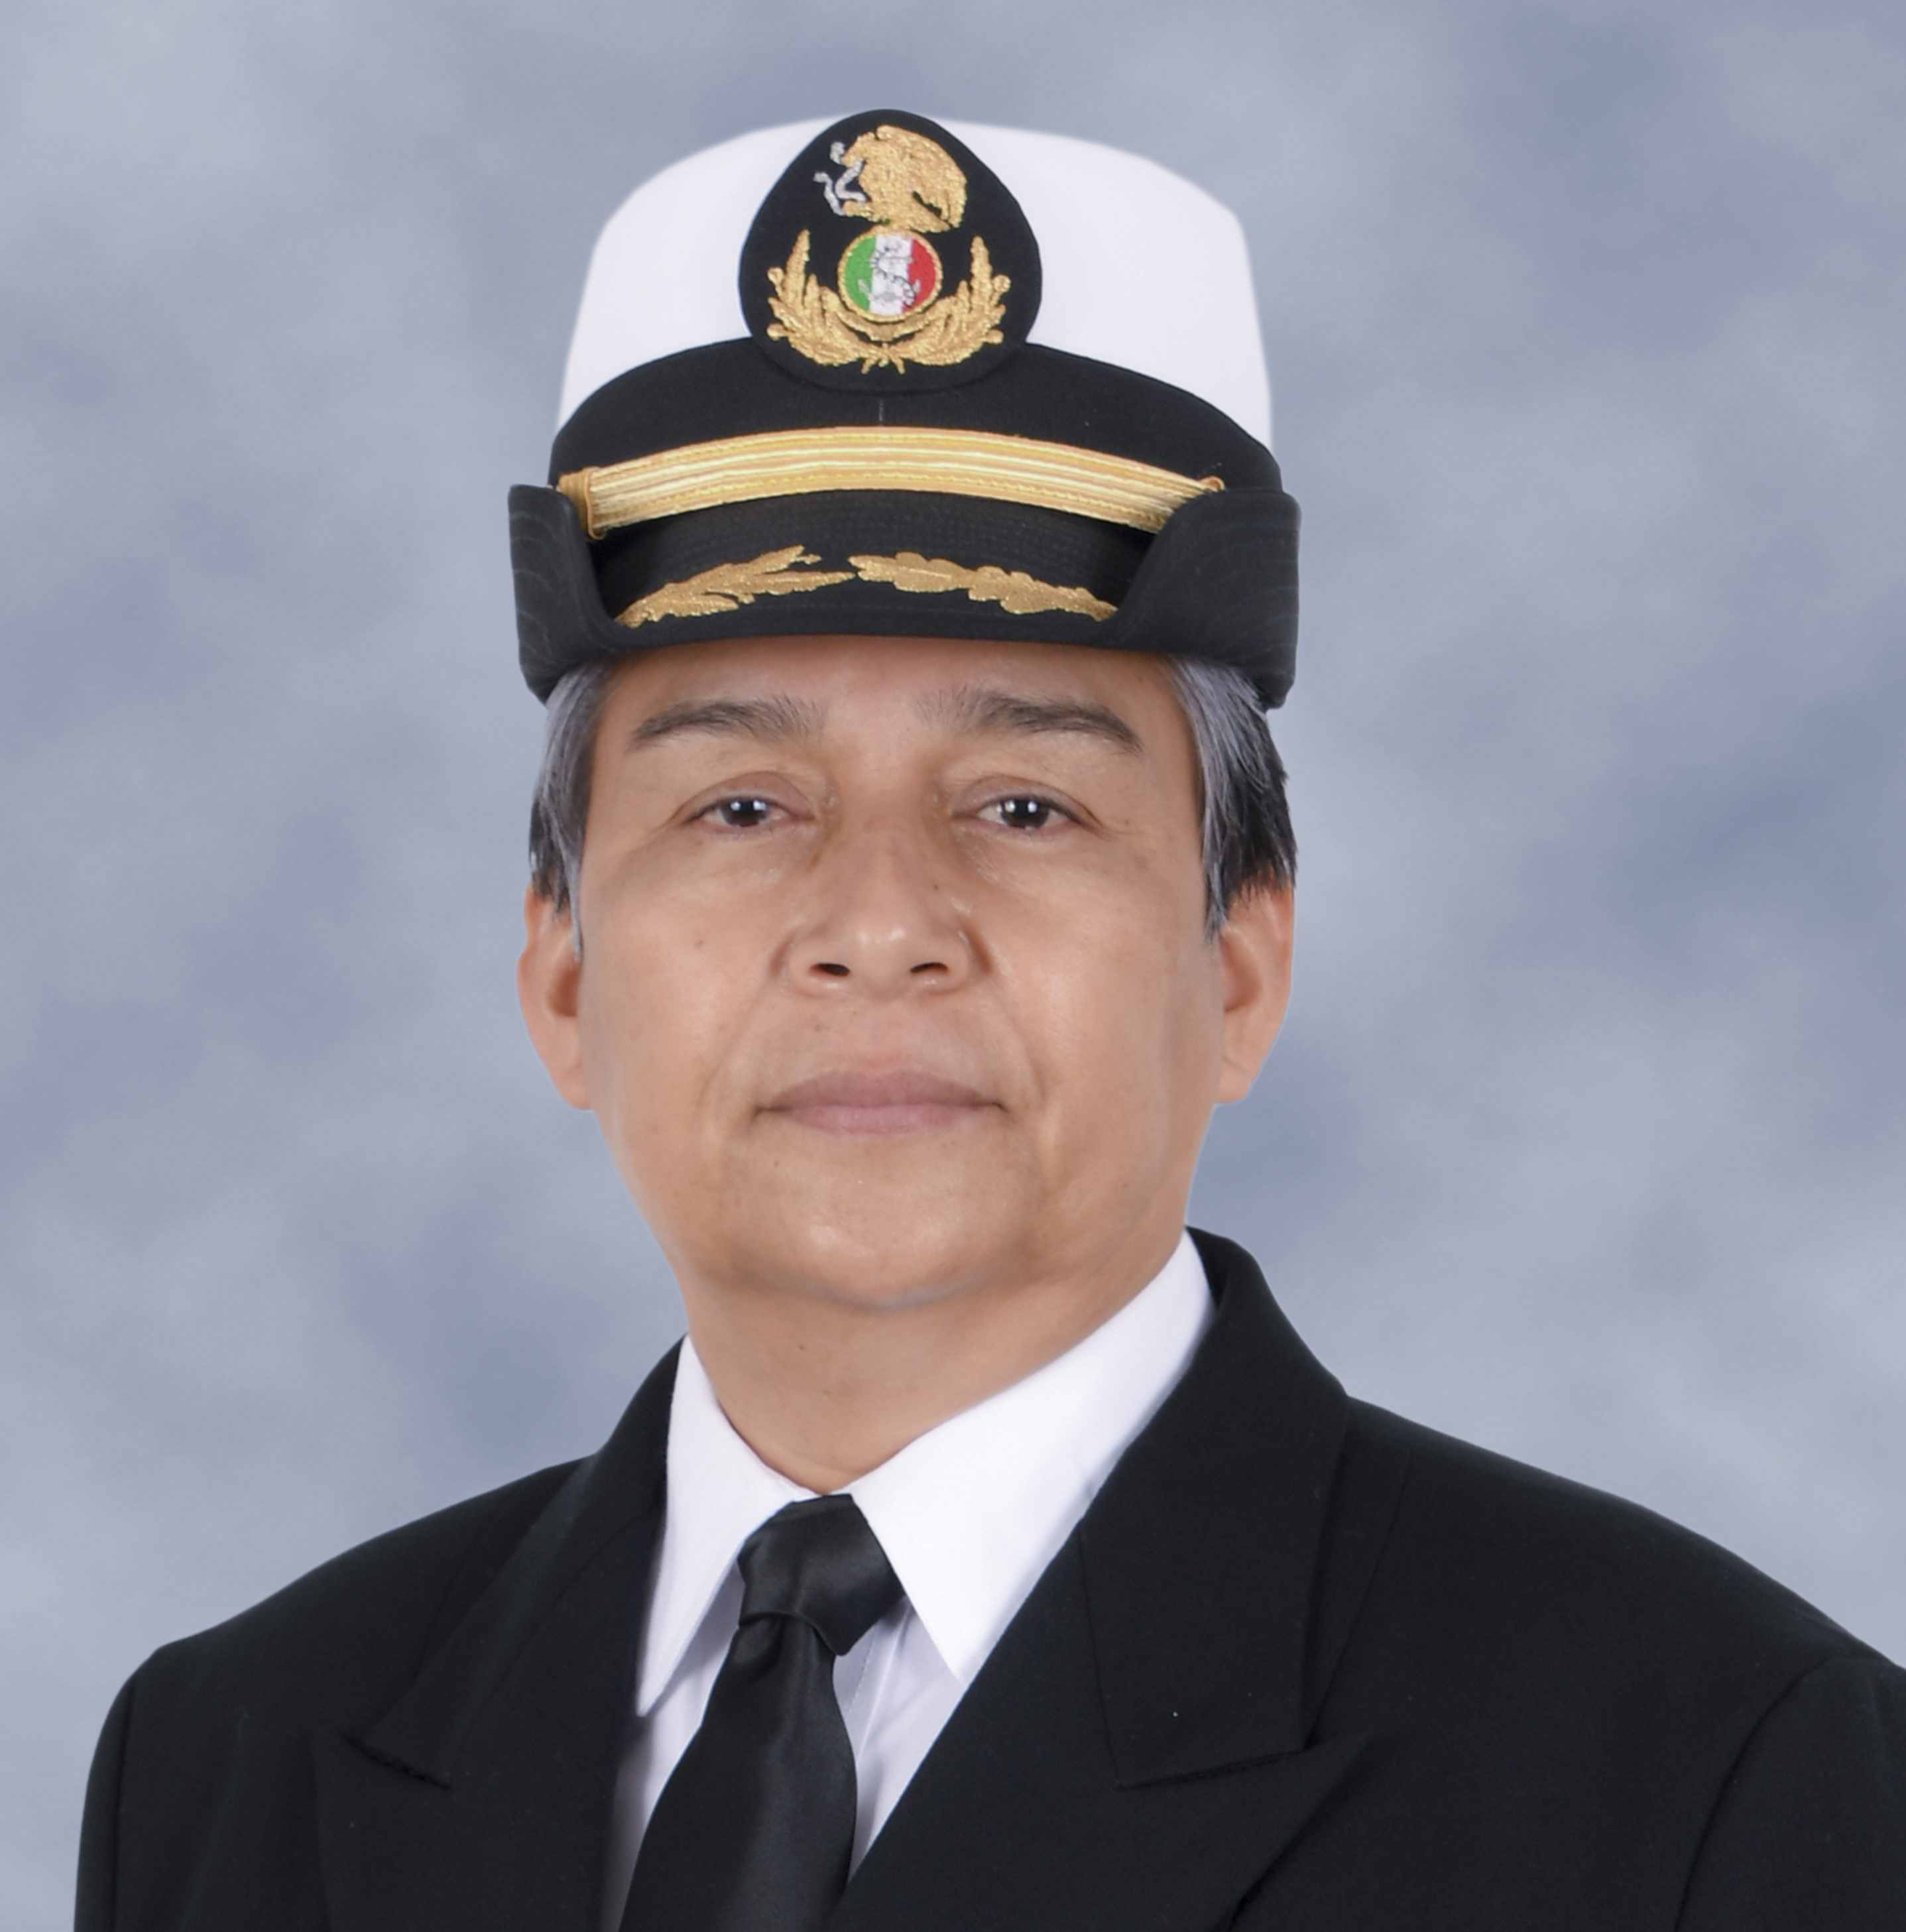 Capitán de Altura
Ana Laura López Bautista
Coordinadora General de Puertos y Marina Mercante